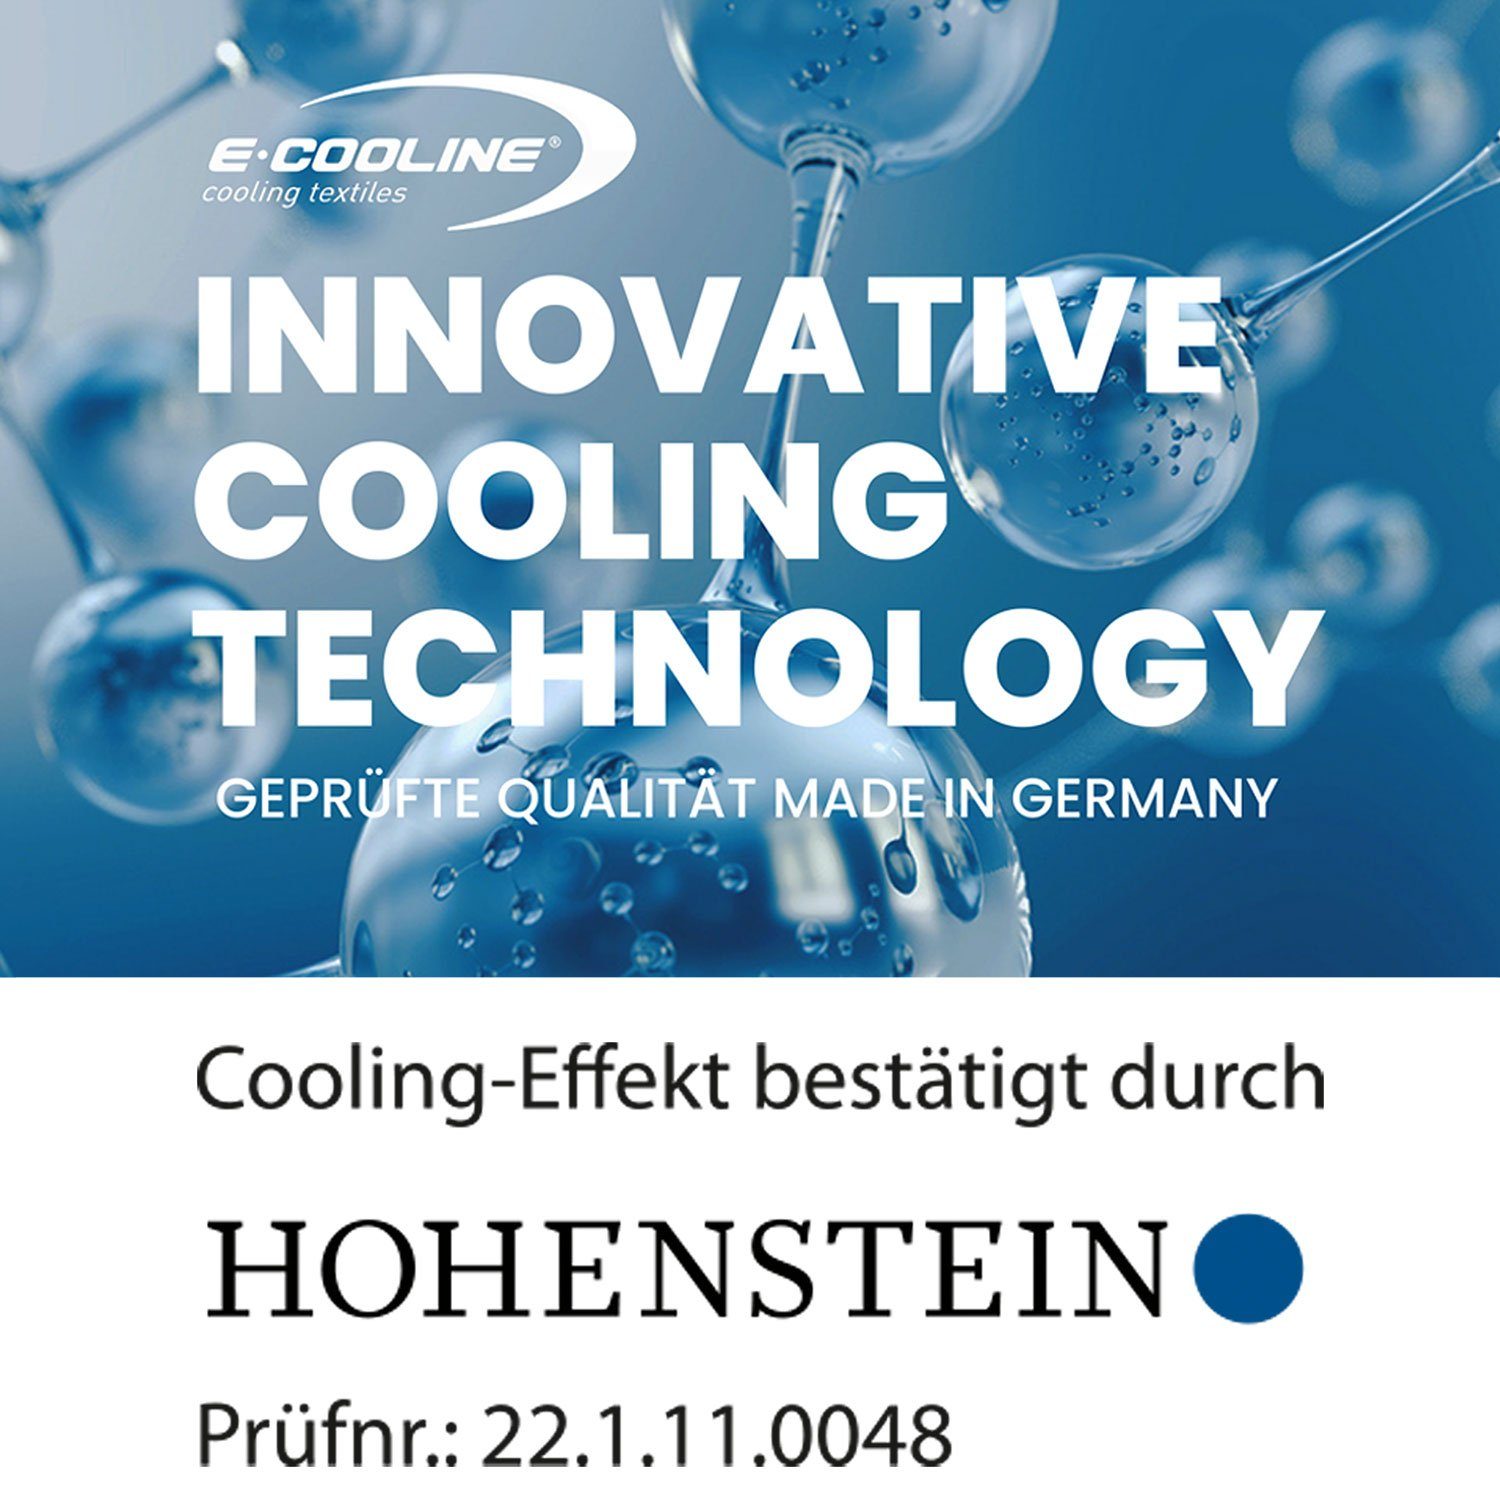 E.COOLINE Bandana - kühlend - zum aktive mit stundenlange Kühlung, Wasser, Aktivierung durch Blau Kühlung Klimaanlage Anziehen